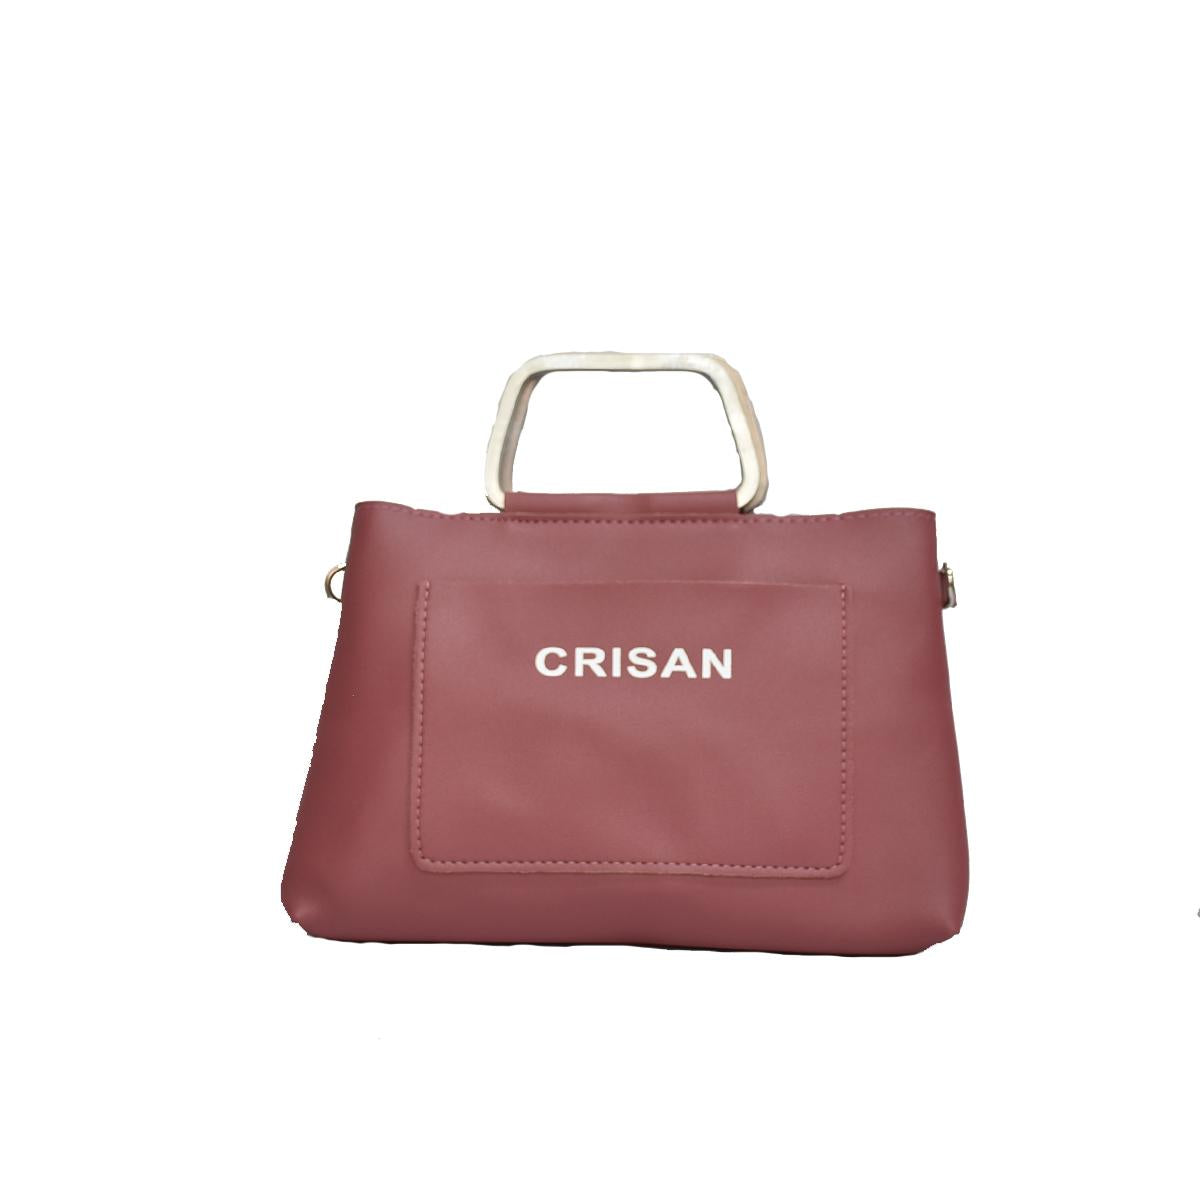 Crisan Bags - Liezel - Handbag-Crisan bags